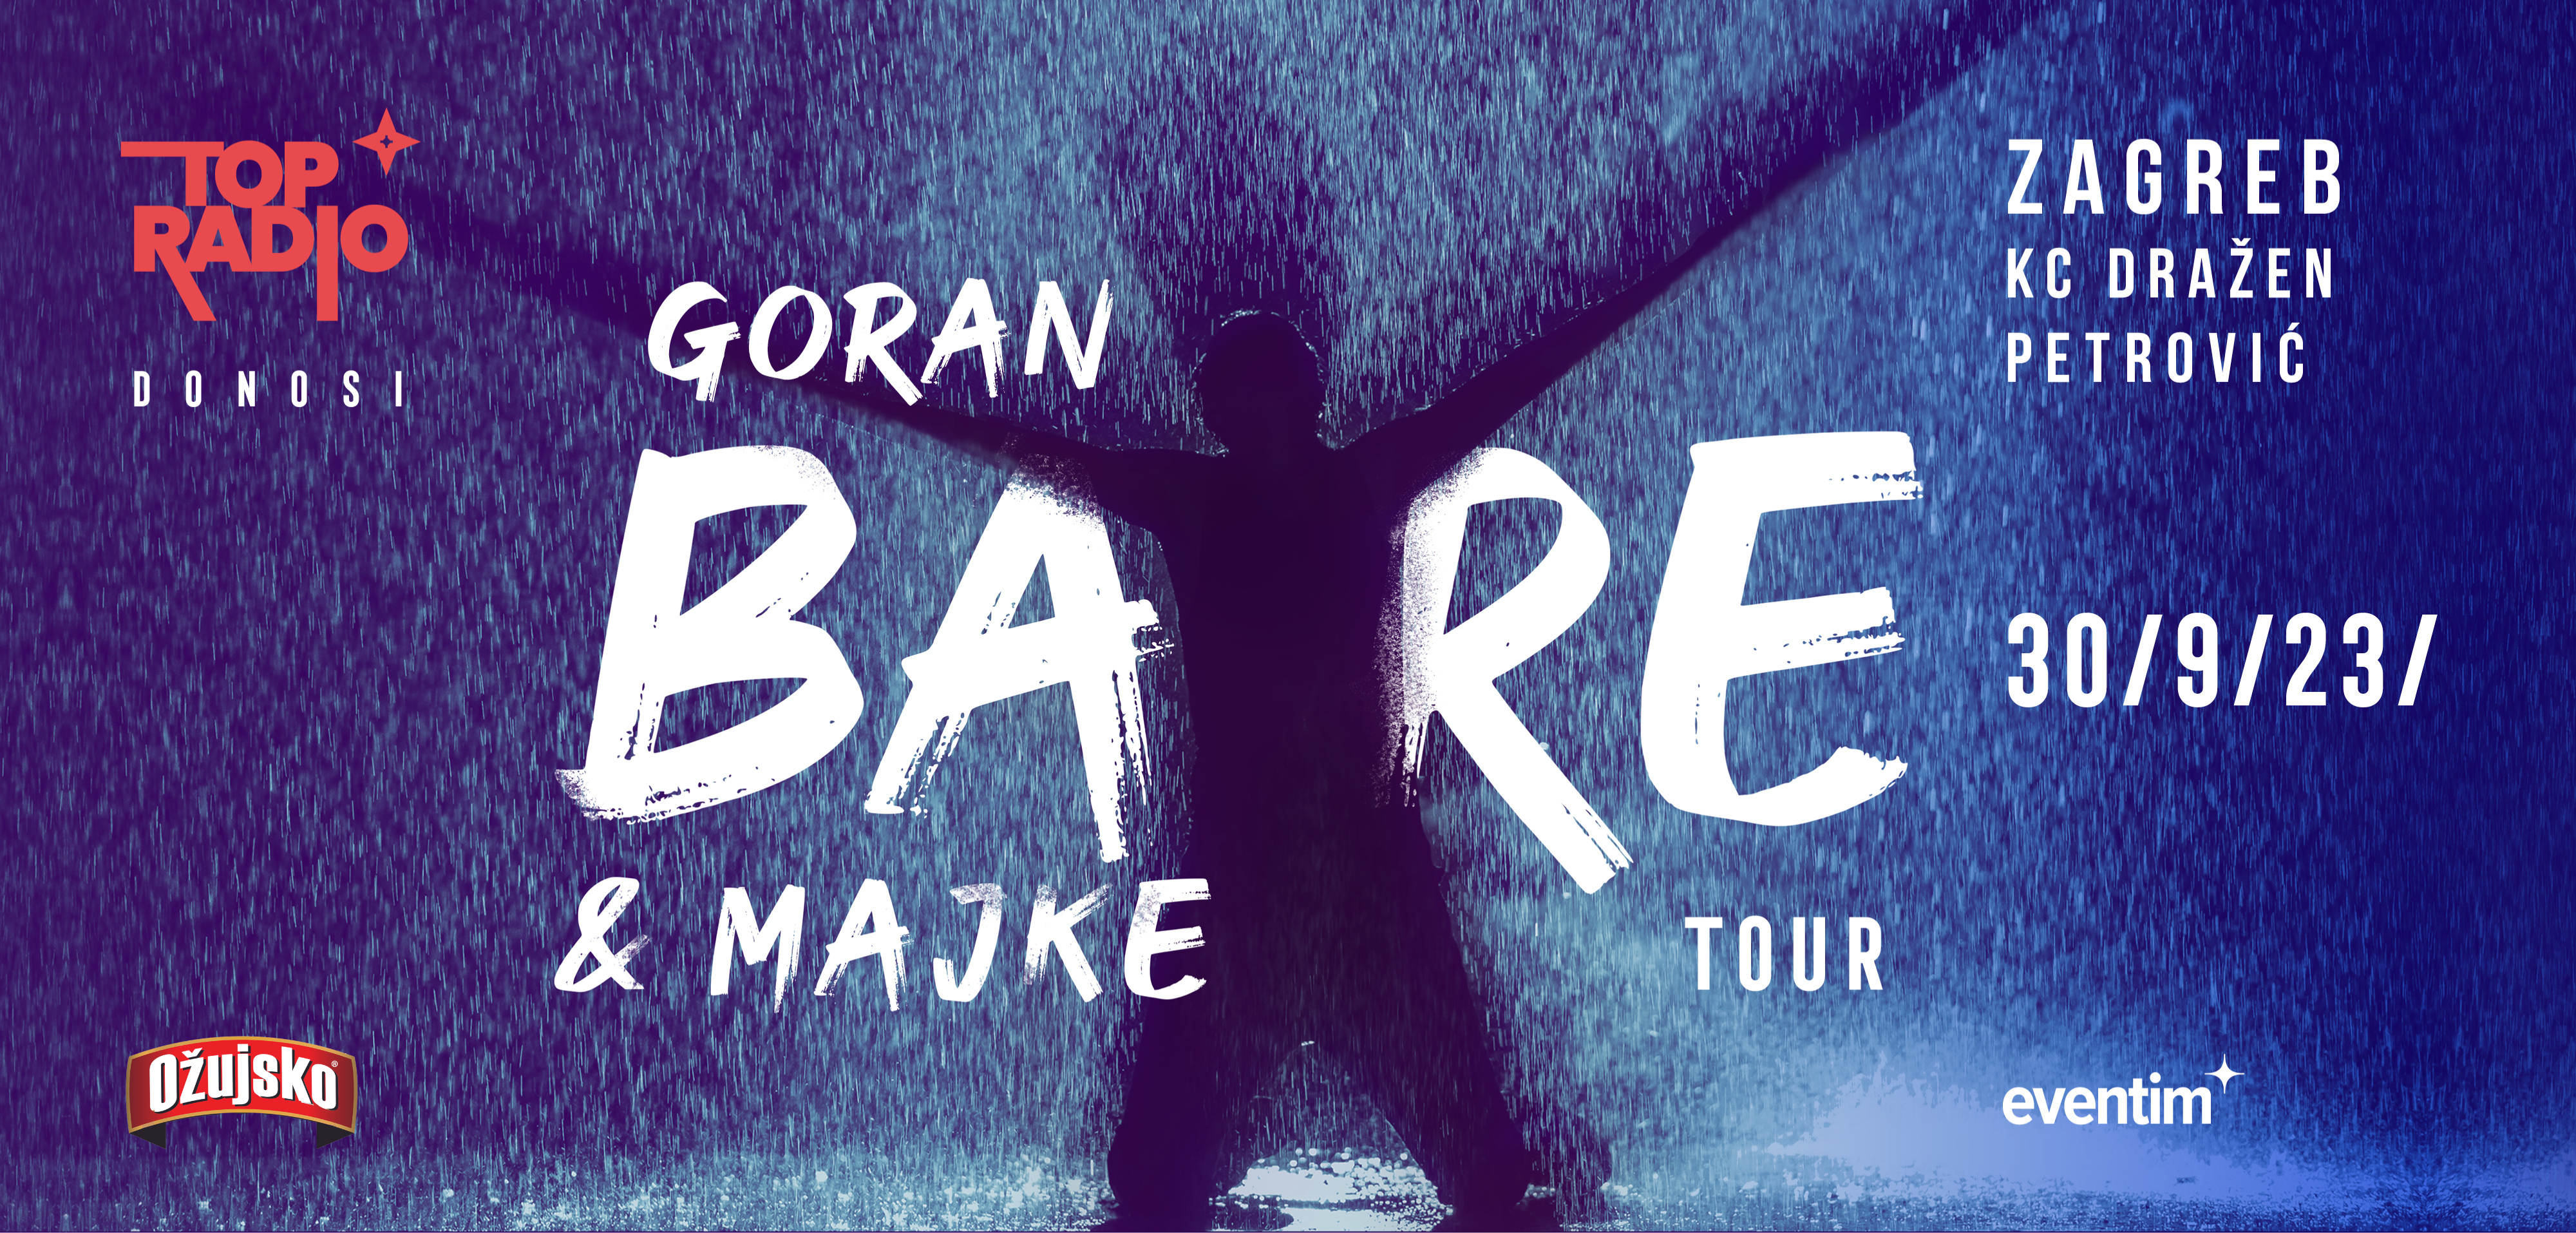 Potvrđeno je – Goran Bare & Majke tour stiže u Zagreb!